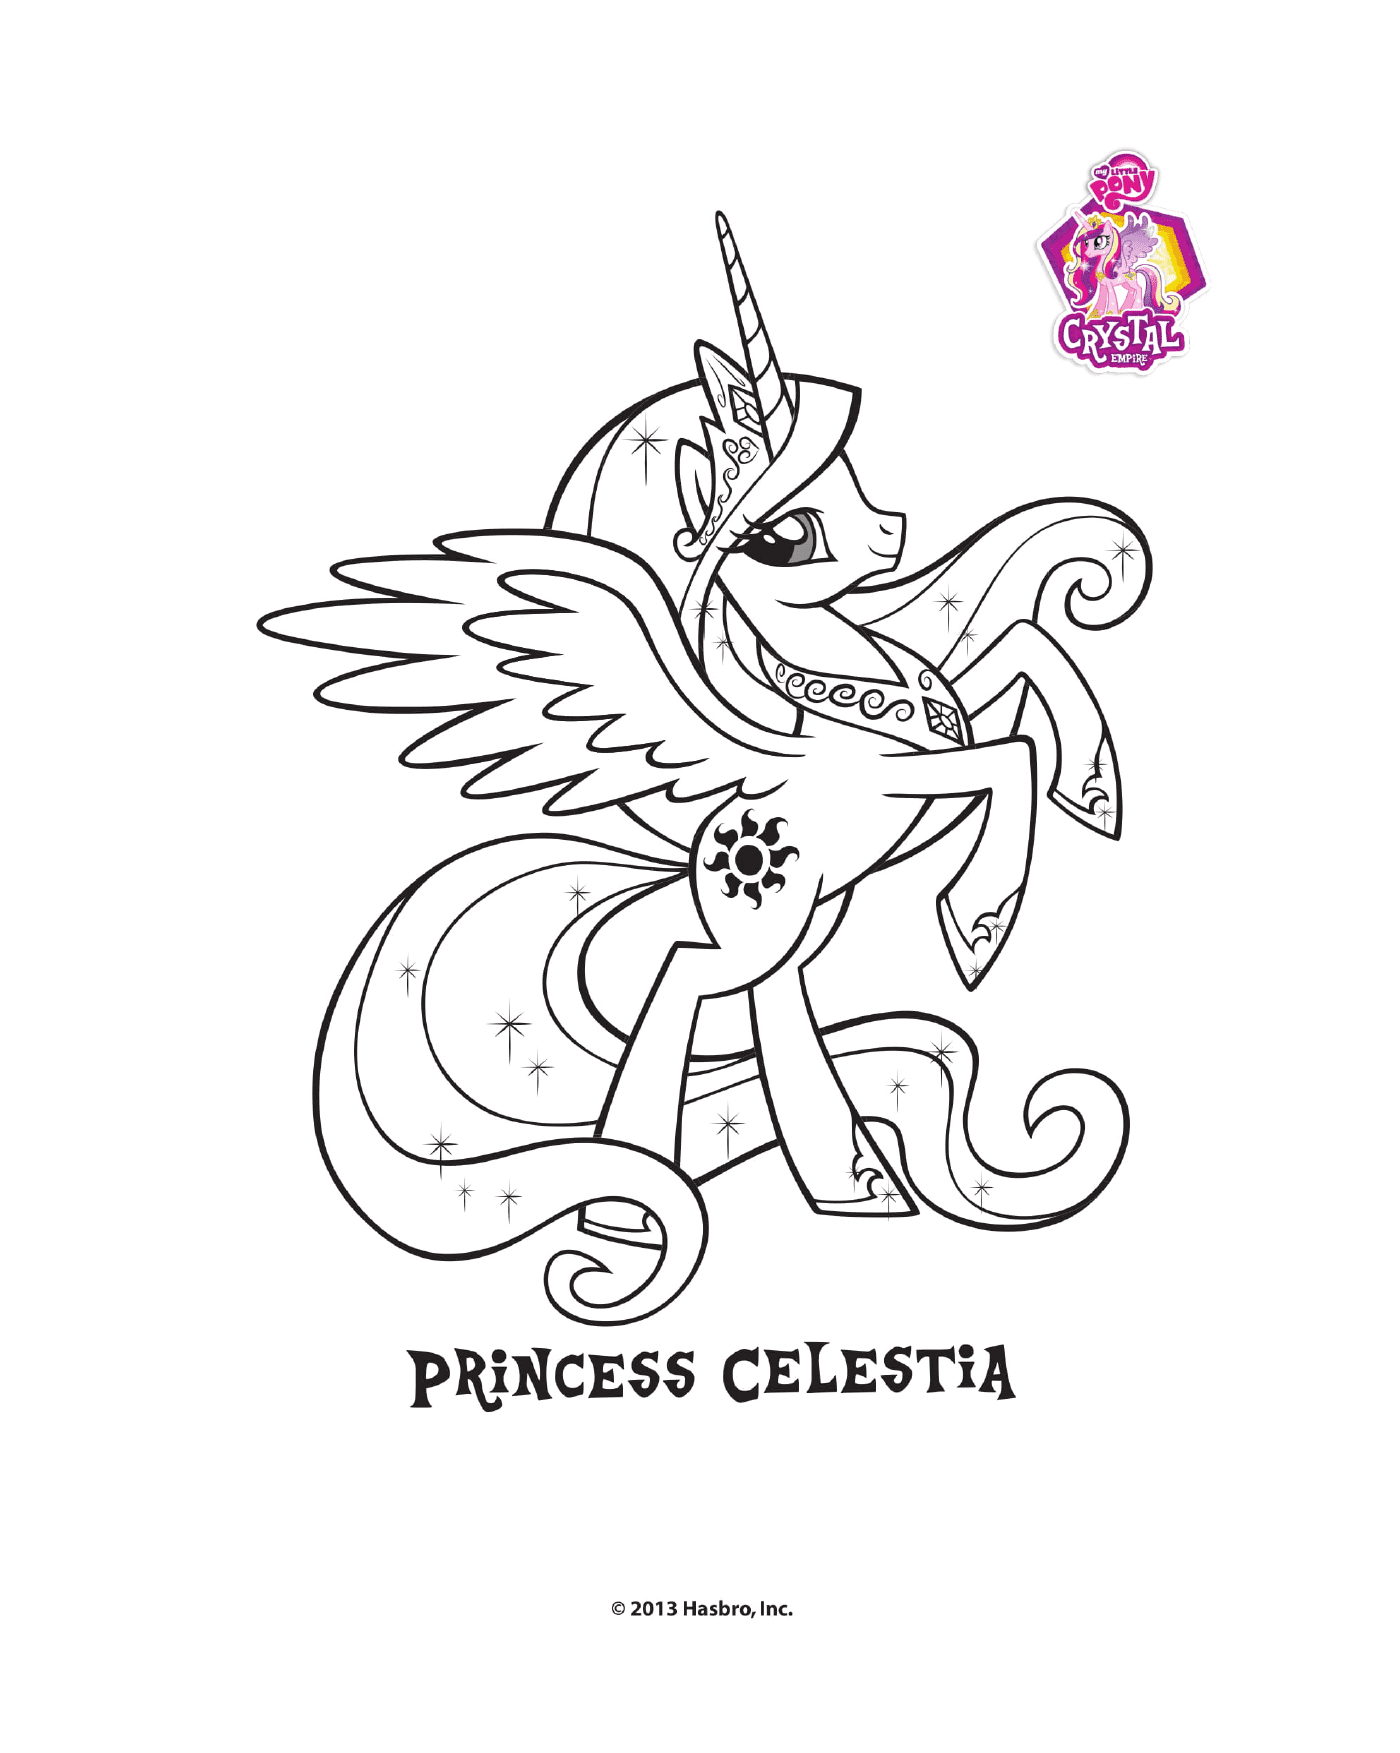  Prinzessin Celestia vom Kristallreich 